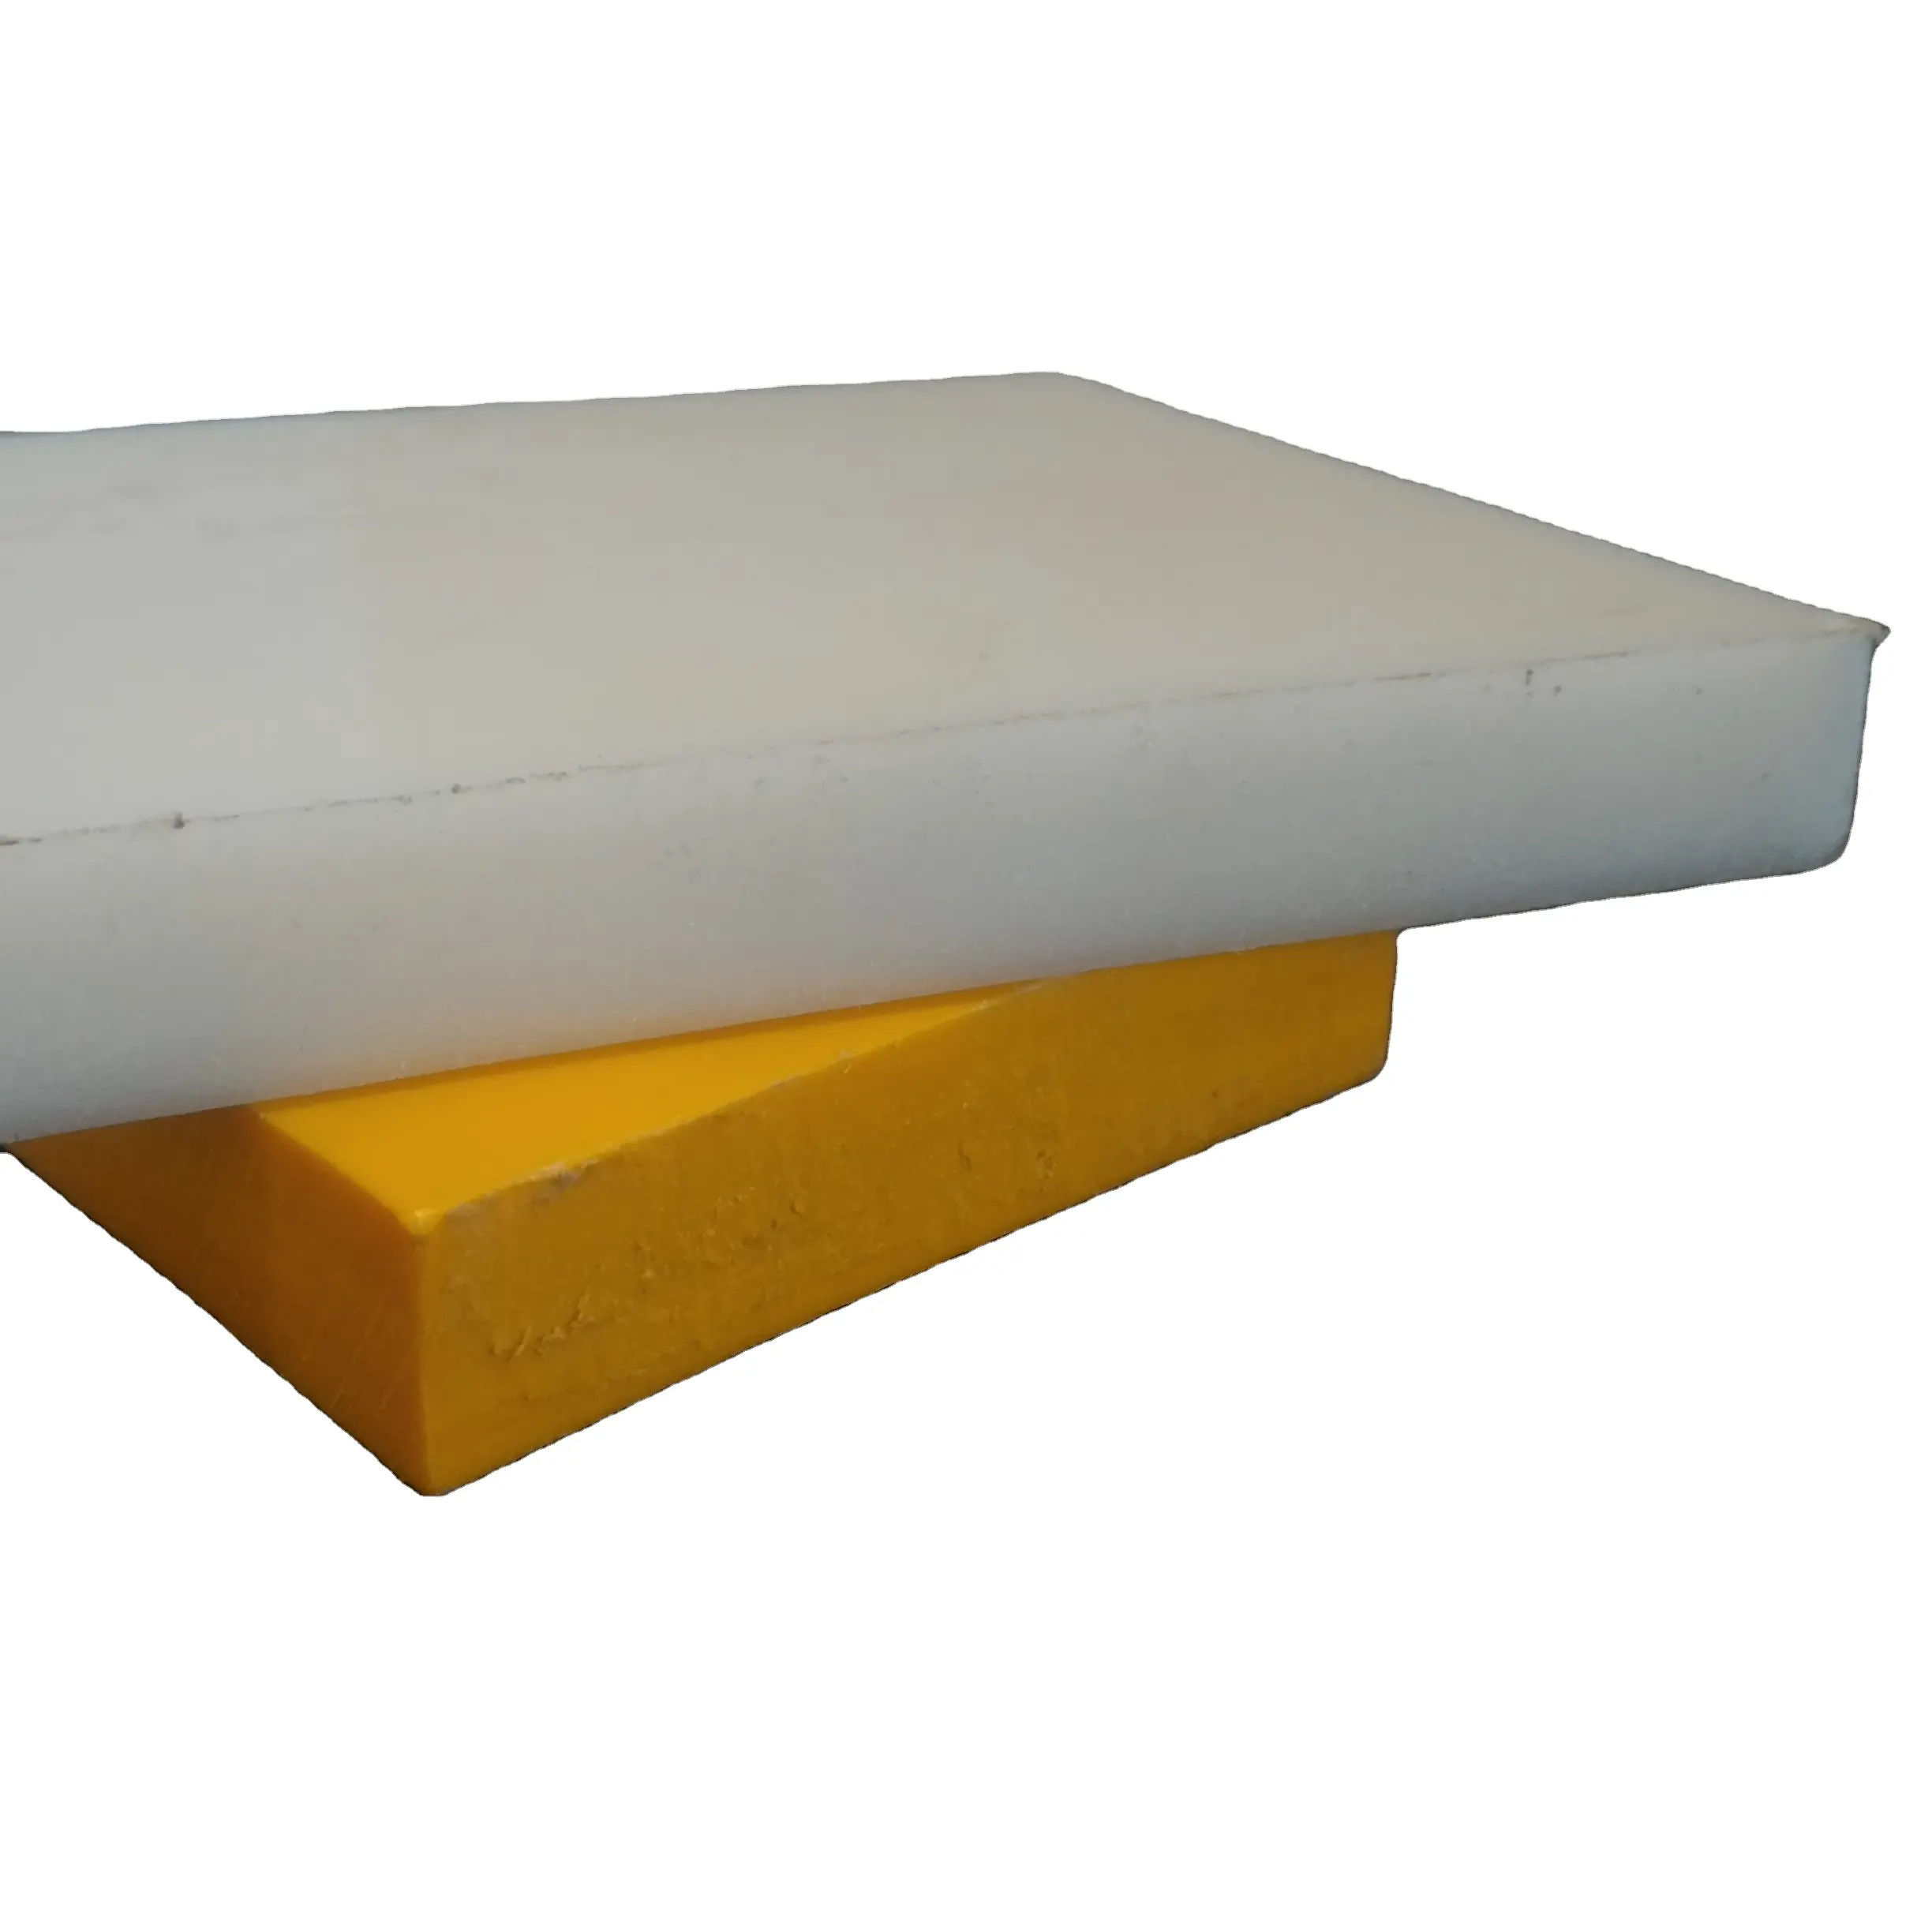 UP lembaran plastik uhmwpe tingkat virgin warna putih 2 sampai 100 mm polimer kuat tebal iso 9001:2015 perusahaan bersertifikat